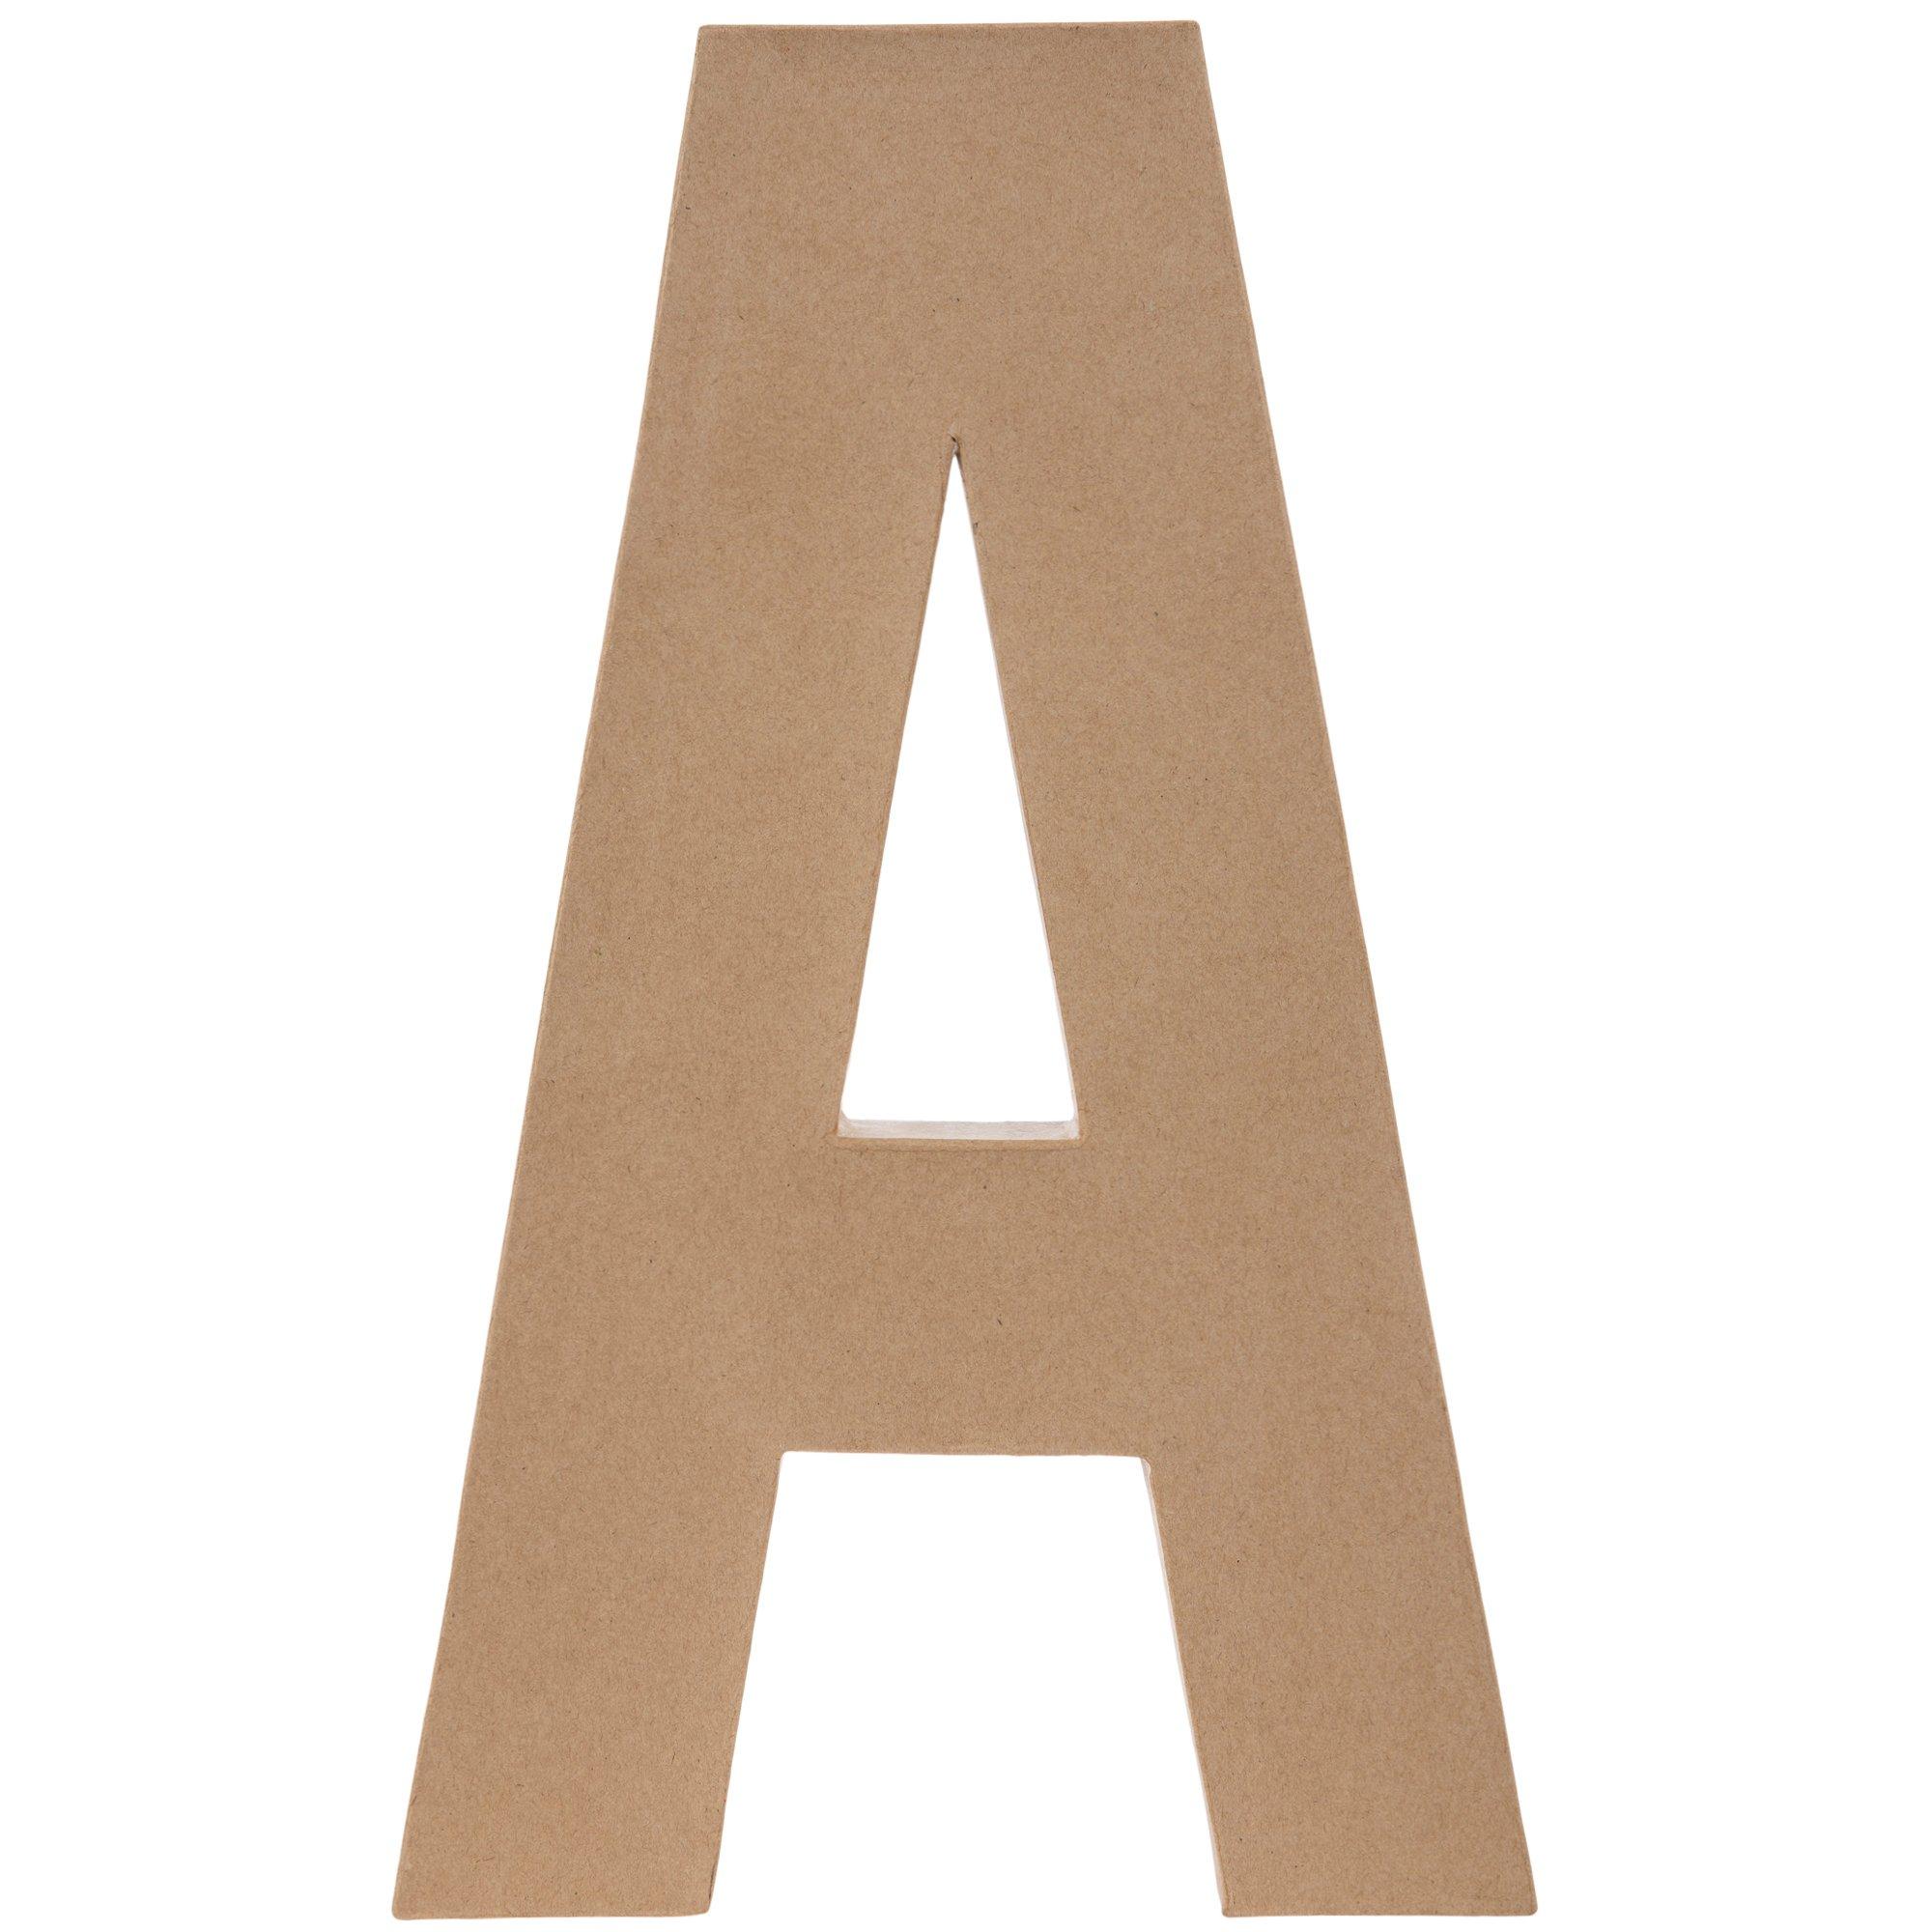 Freestanding Large Cardboard Letter : D